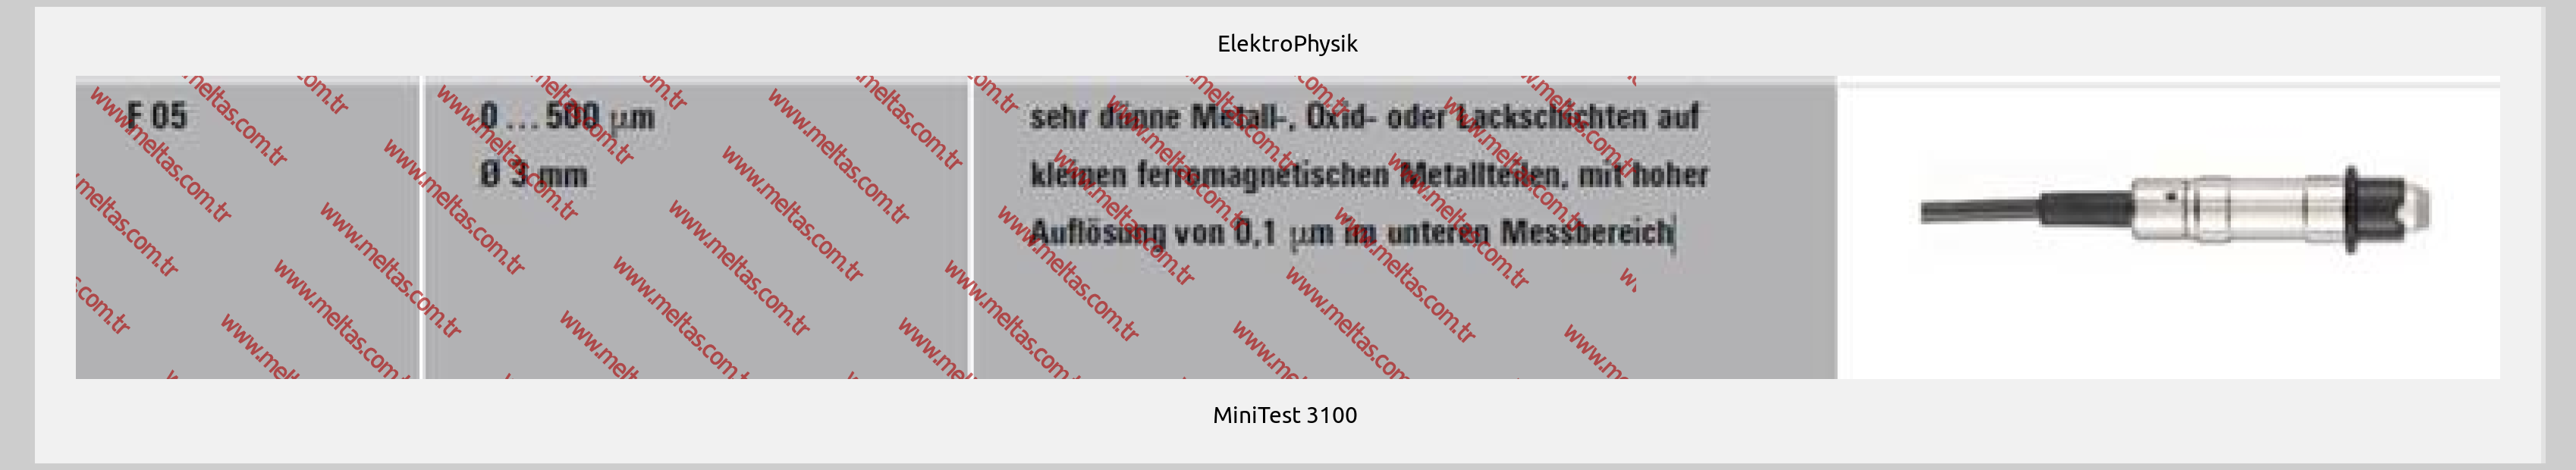 ElektroPhysik - MiniTest 3100 